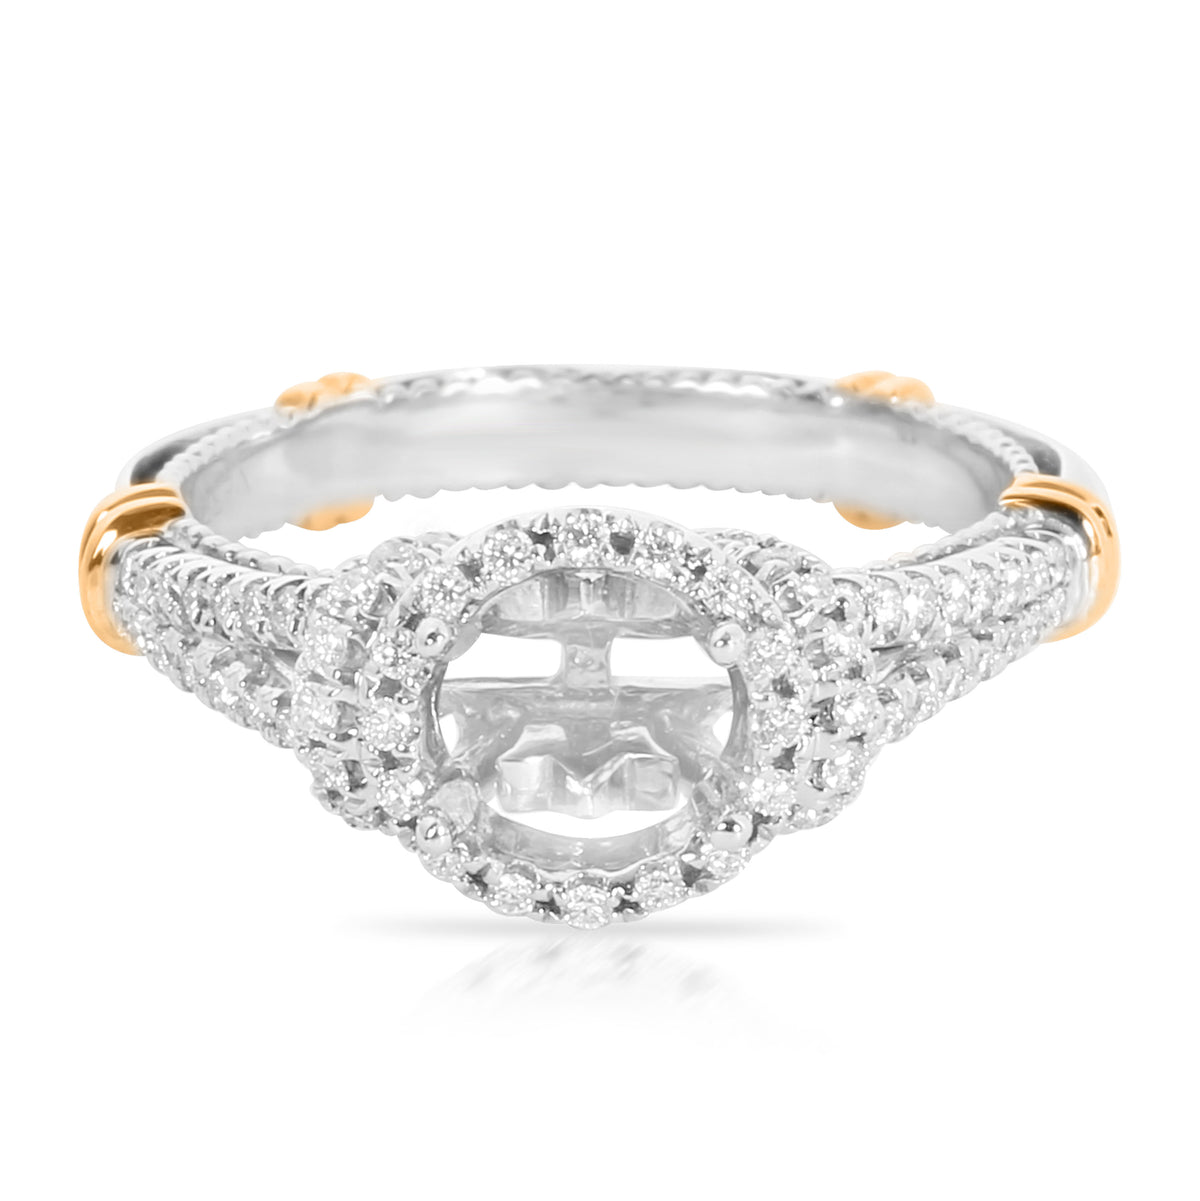 Verragio Parisian Diamond Engagement Ring Setting in 14K 2 Tone Gold 0.33ctw